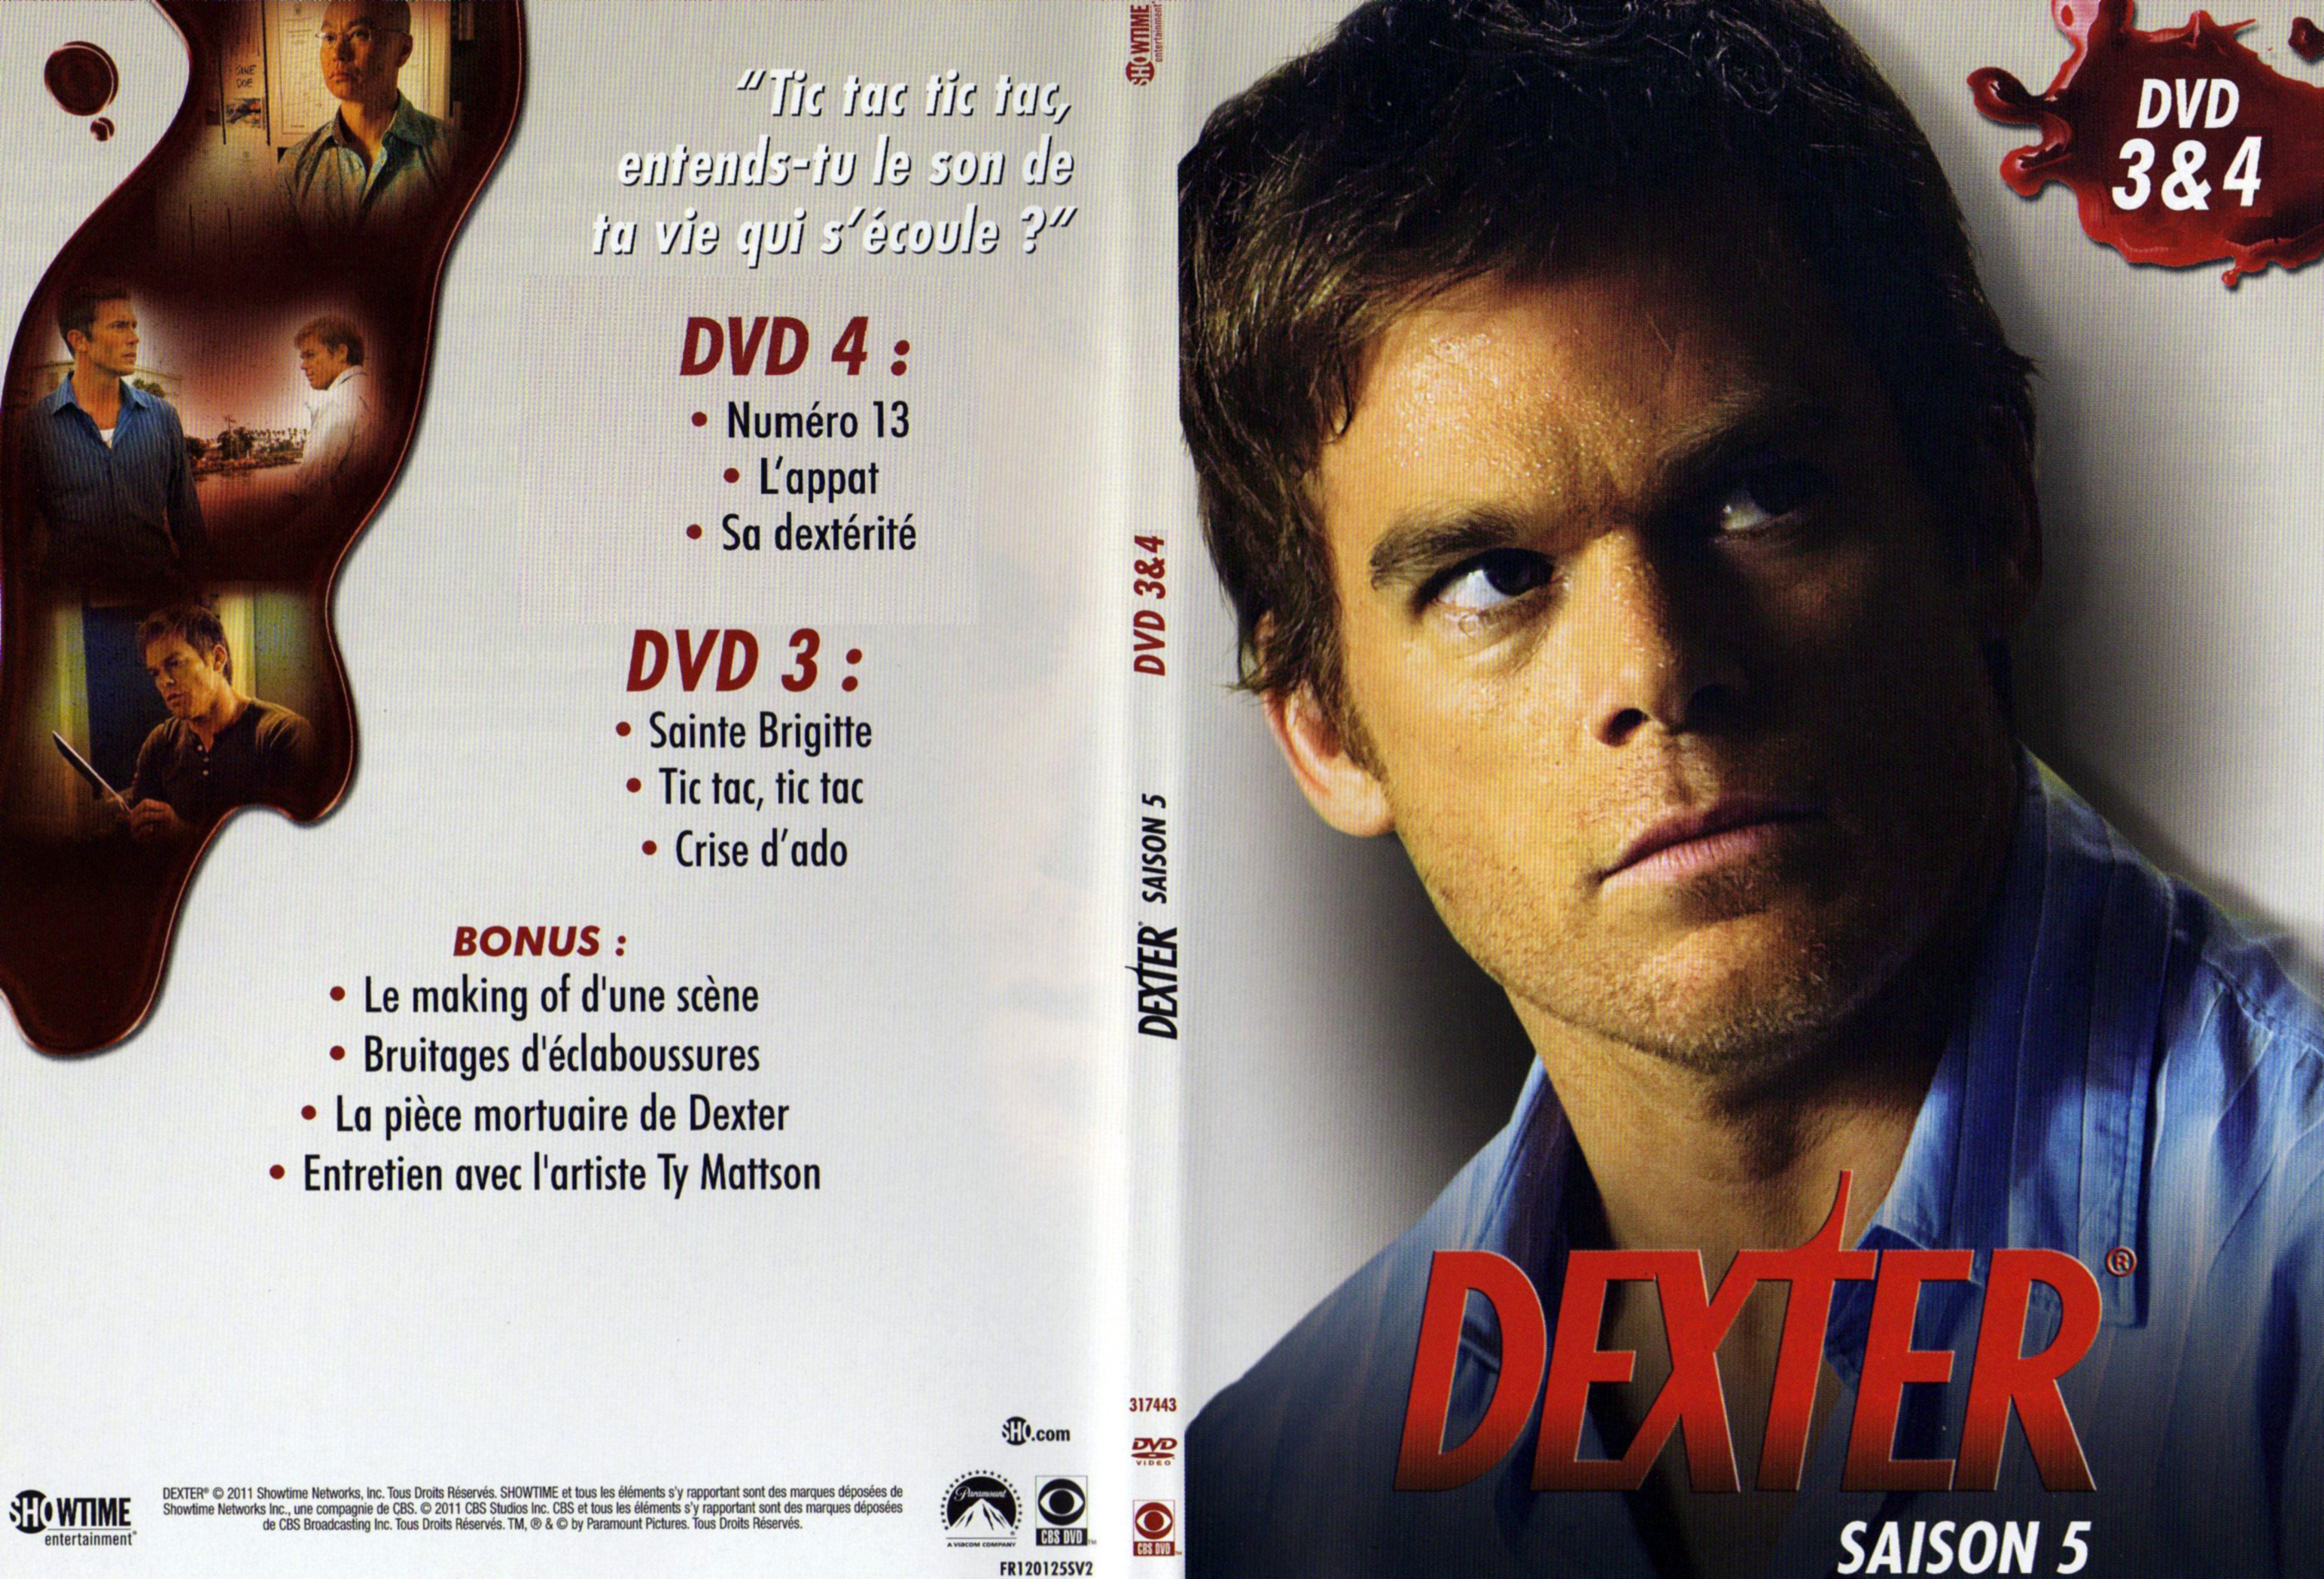 Jaquette DVD Dexter Saison 5 DVD 2